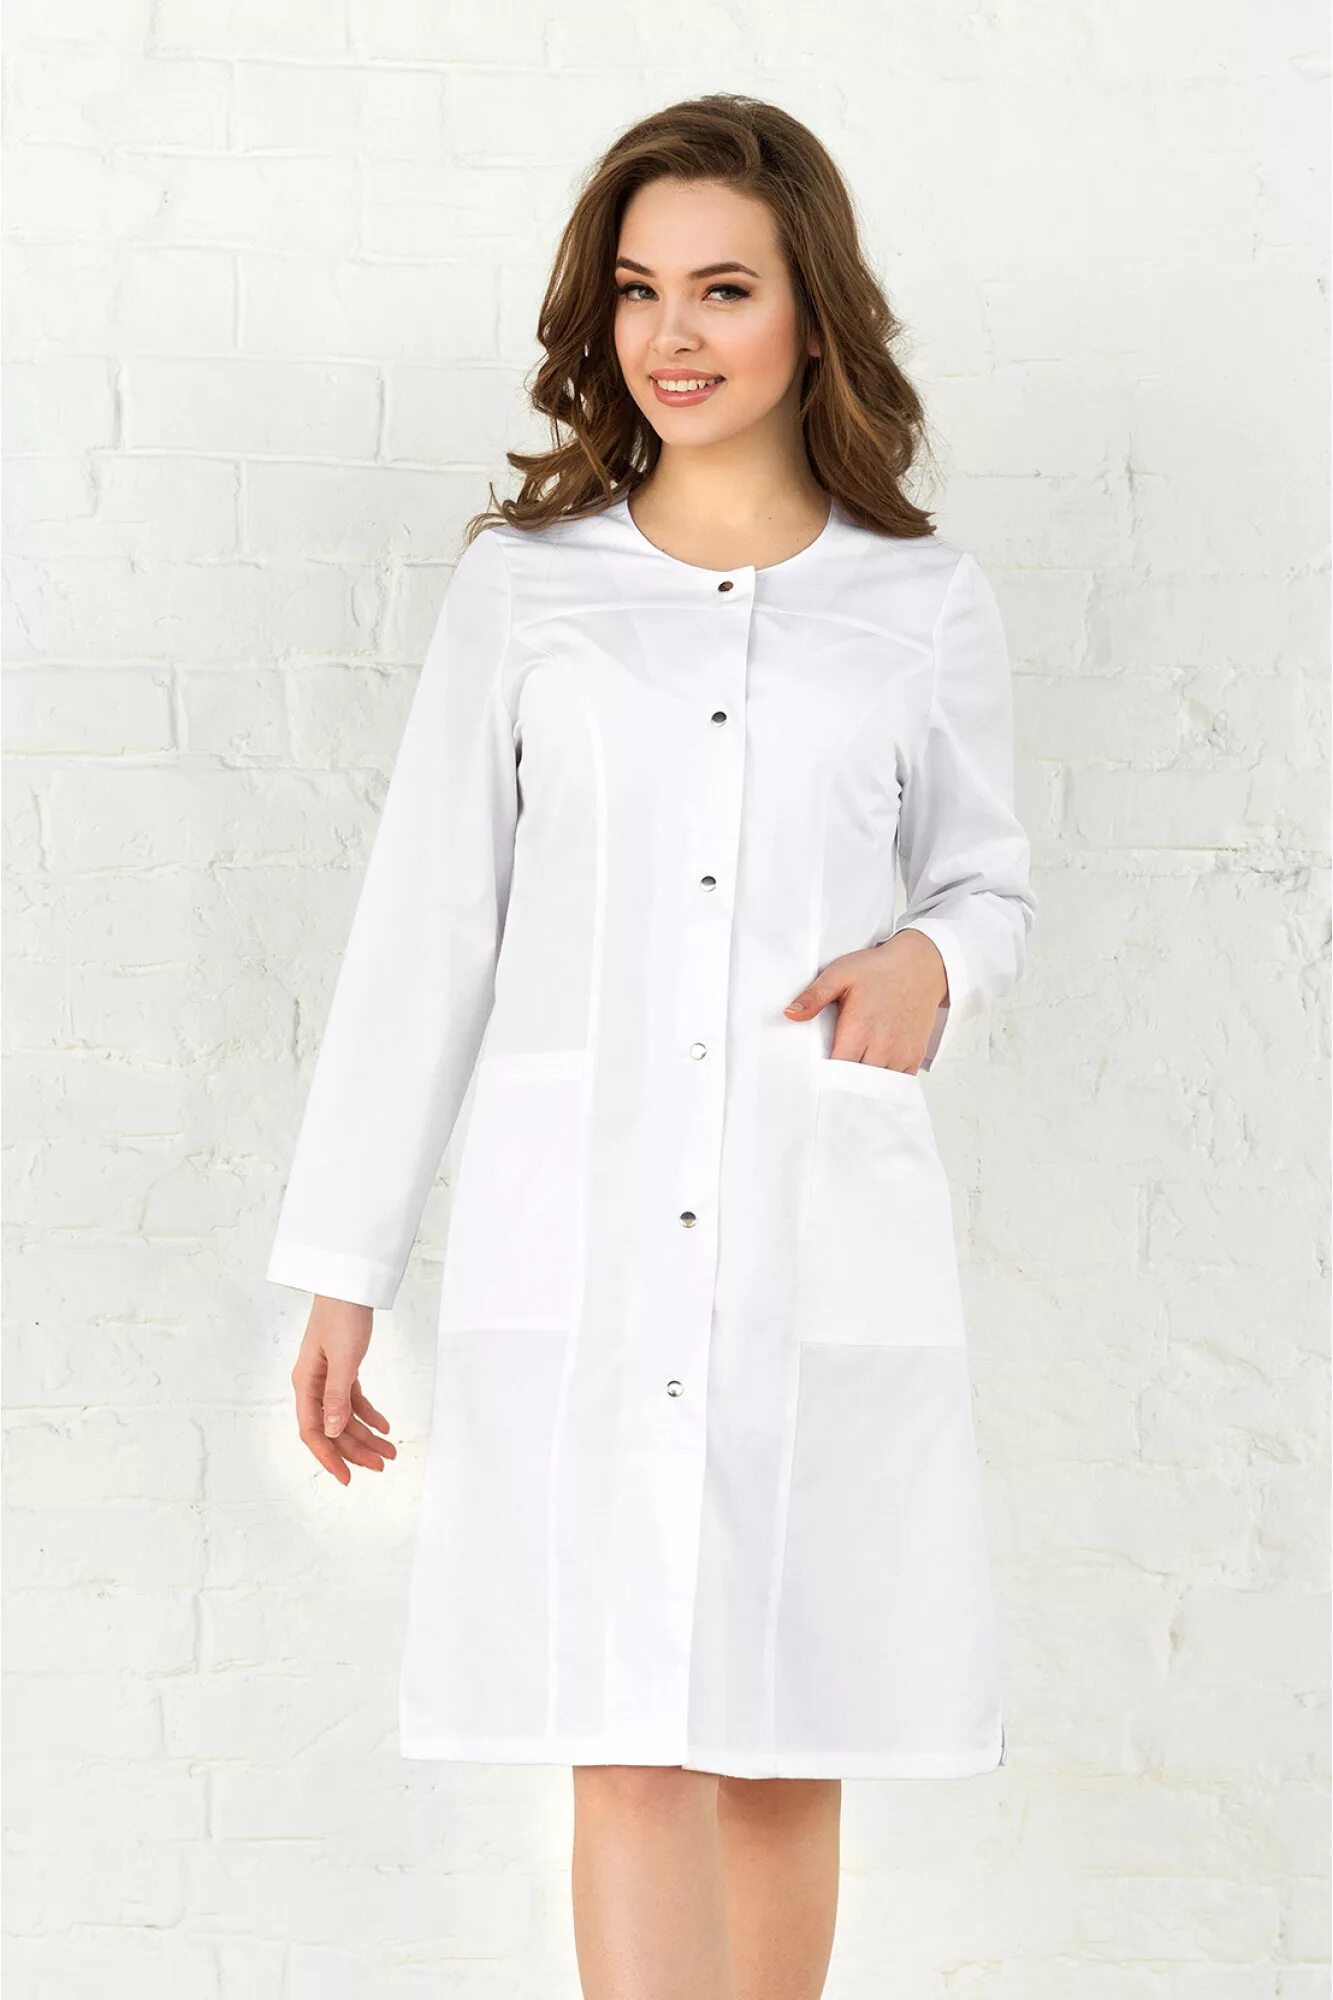 Медицинский халат-платье Медэлит. Халат белый медицинский вильдберис. Халат валберис медицинский 44 размер. Халат медицинский белый. Куплю медицинский халат недорого